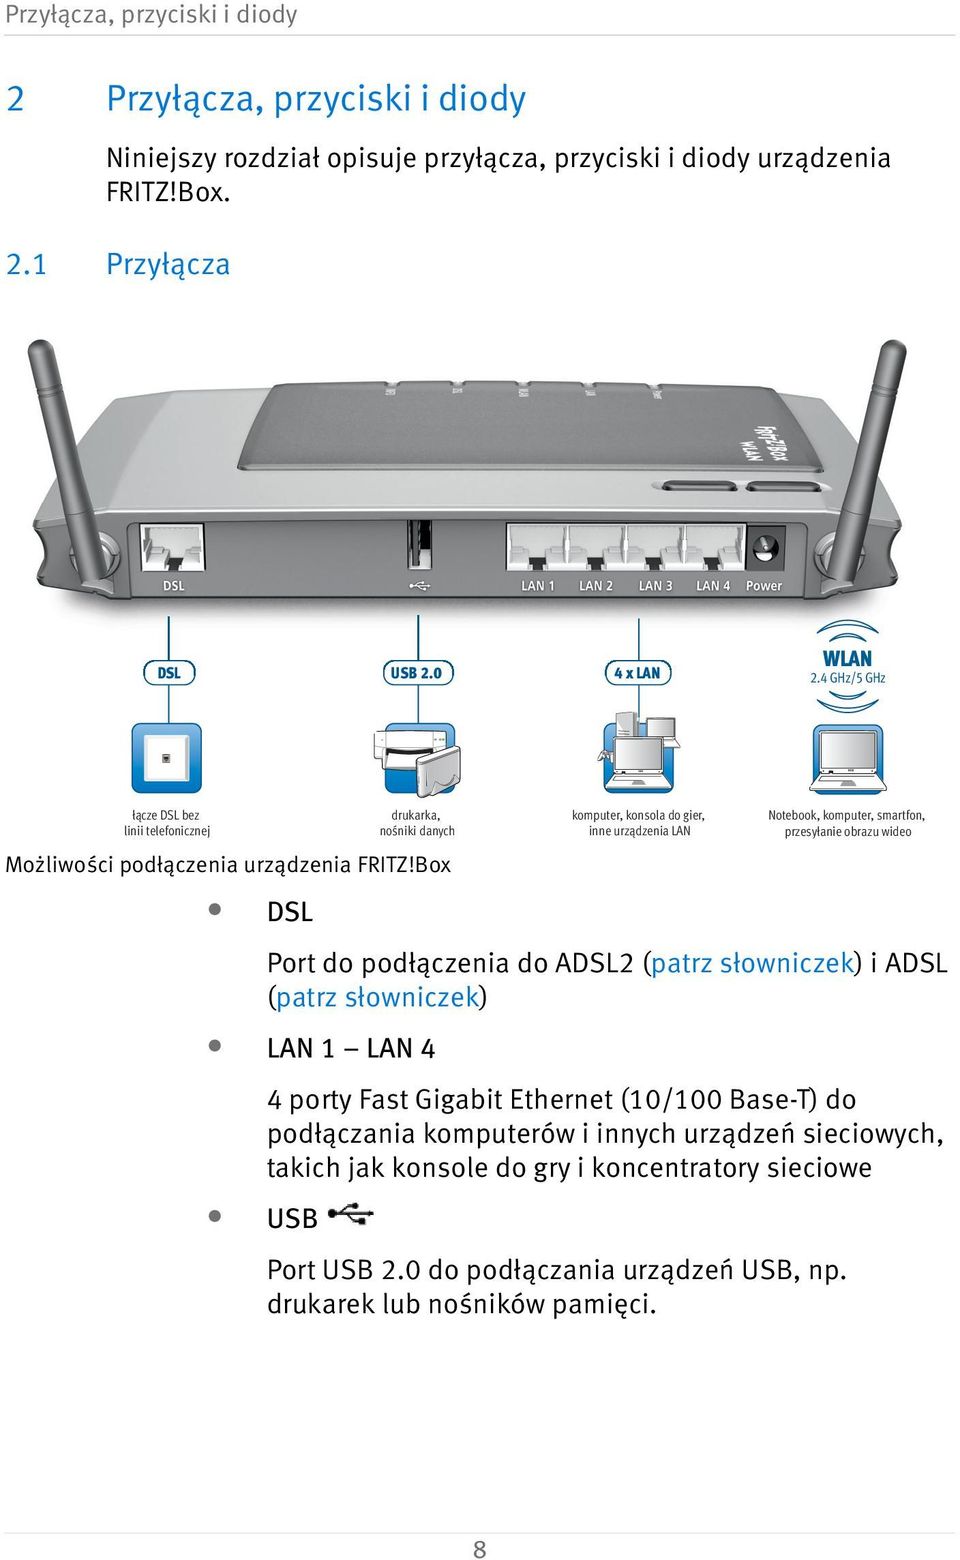 Box komputer, konsola do gier, inne urządzenia LAN Notebook, komputer, smartfon, przesyłanie obrazu wideo DSL Port do podłączenia do ADSL2 (patrz słowniczek) i ADSL (patrz